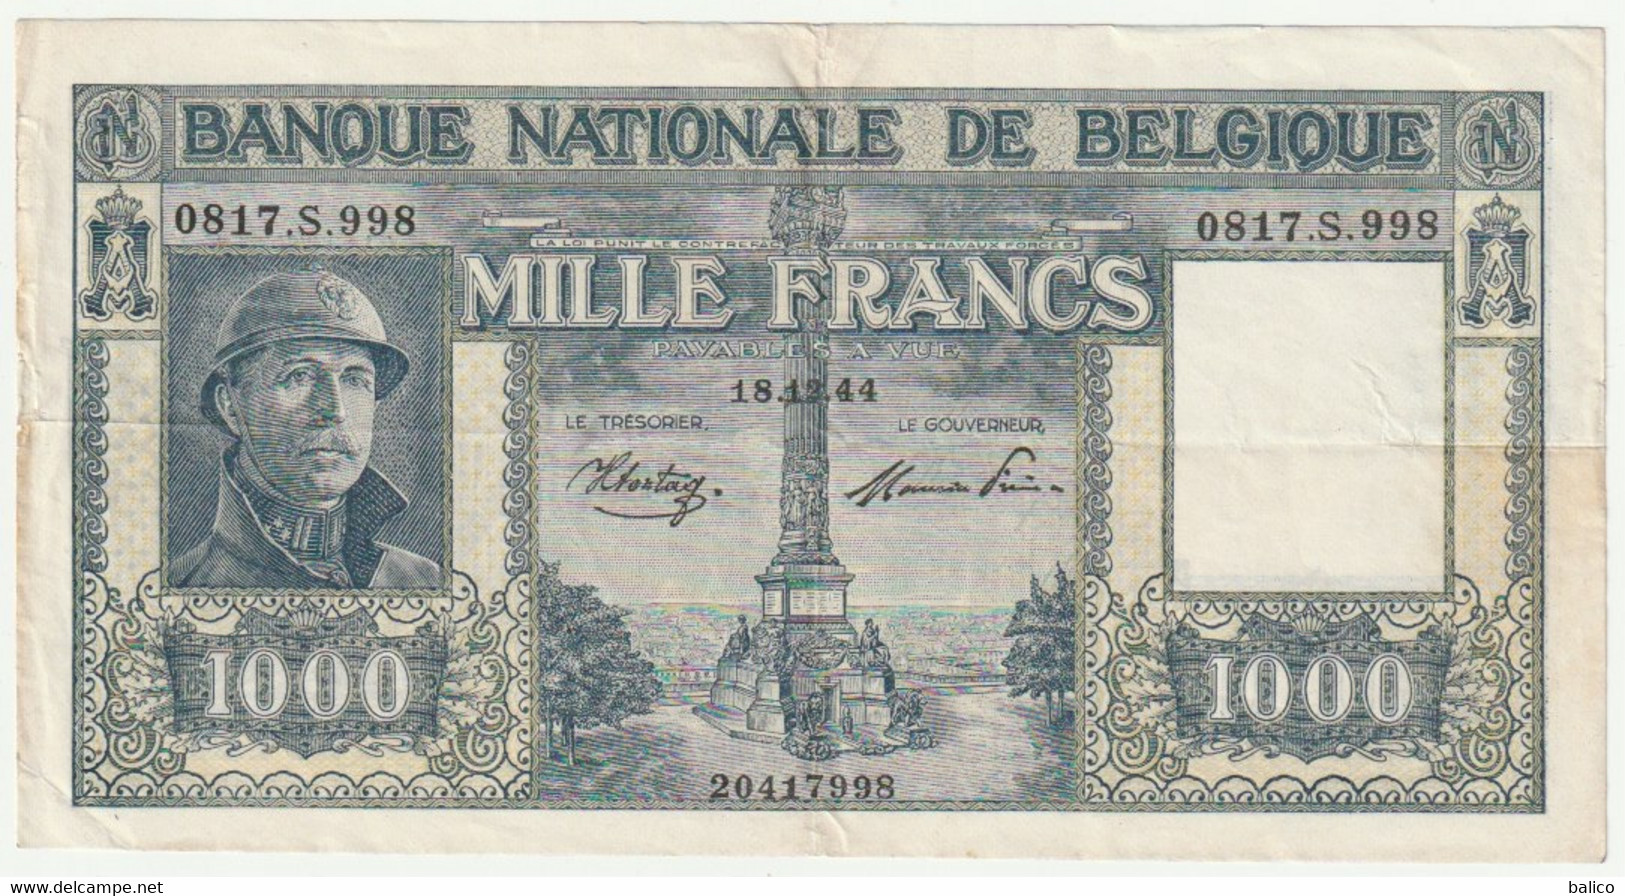 Banque Nationale De Belgique - Mille Francs 18/12/44 - N° 0817.S.998 - 1000 Francs  (très Rare) 20417998 - [ 9] Sammlungen